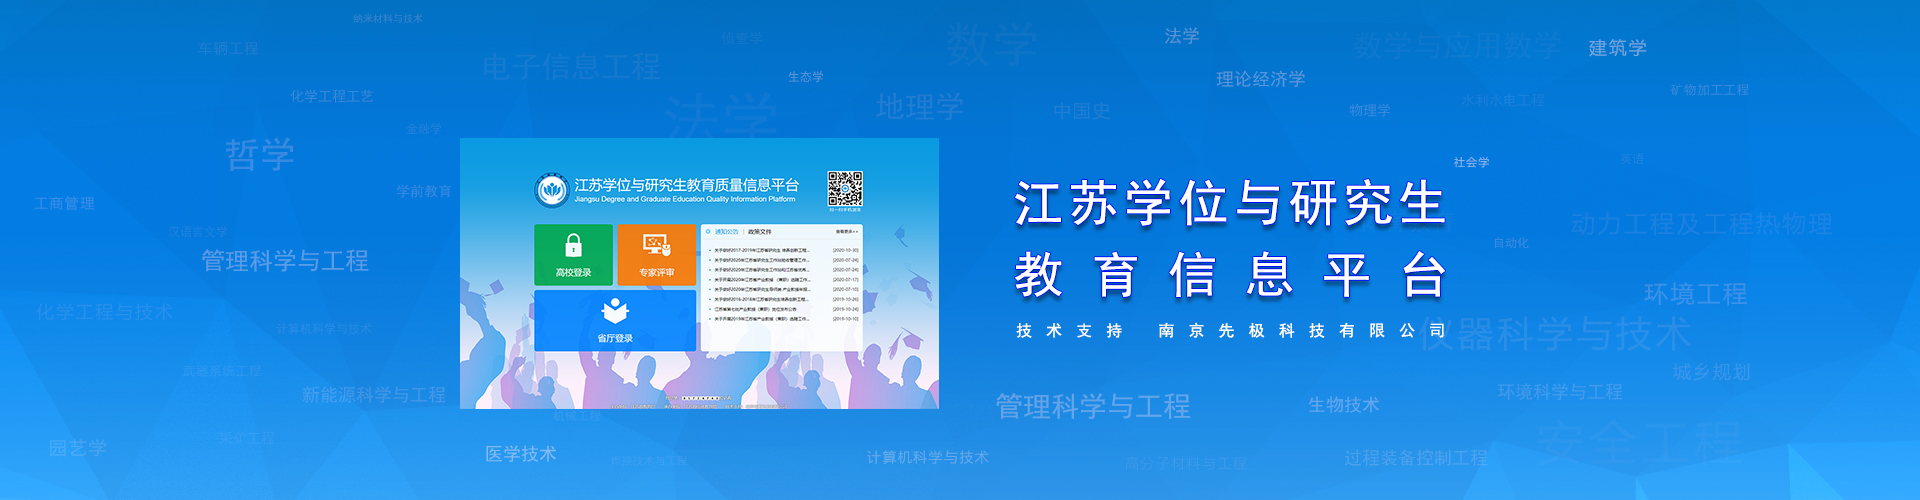 关于当前产品ag线上官方·(中国)官方网站的成功案例等相关图片